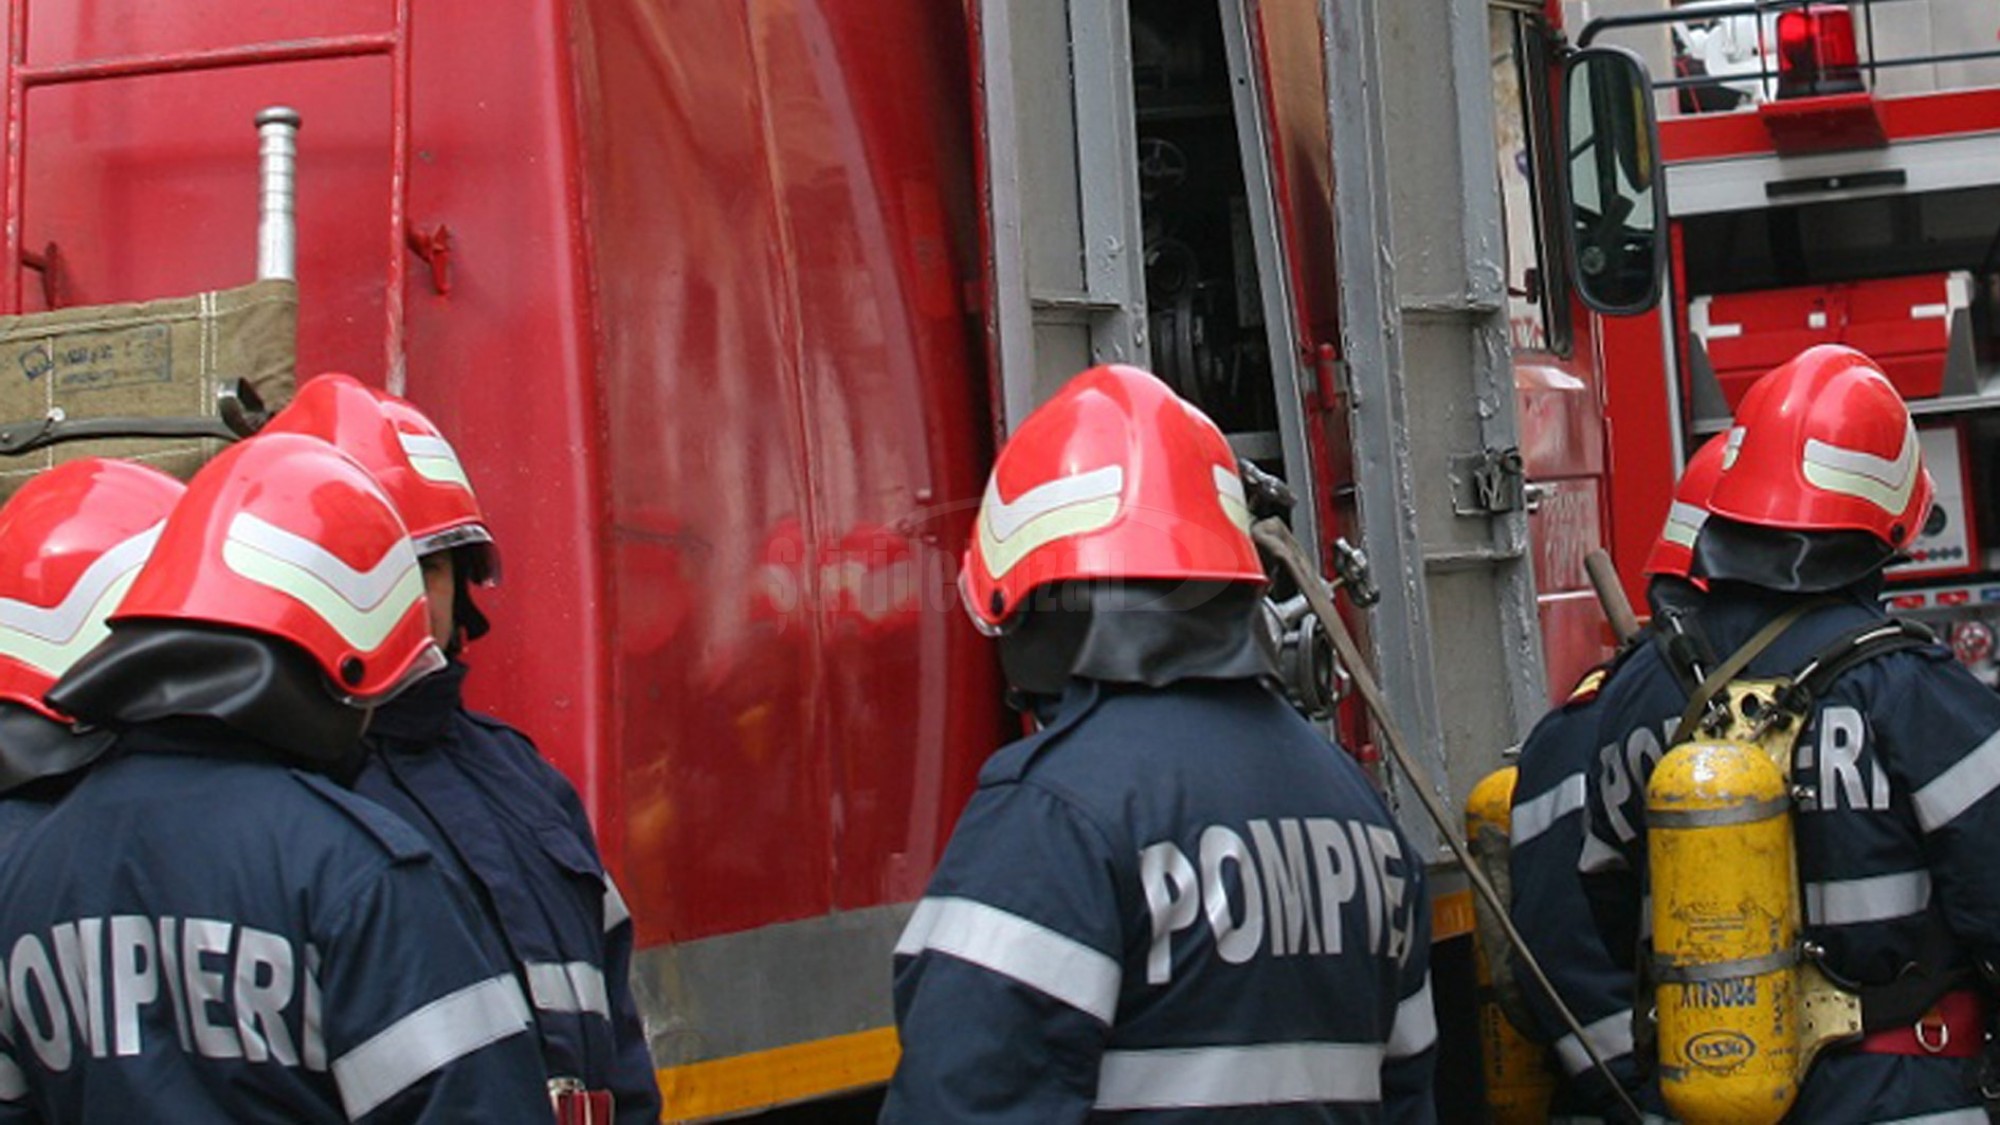 Incendiu într-un bloc din Constanța, pe strada Pescarilor. 28 de persoane au fost evacuate, 2 primesc îngrijiri medicale - incendiu-bloc-constanta-1707405496.jpg